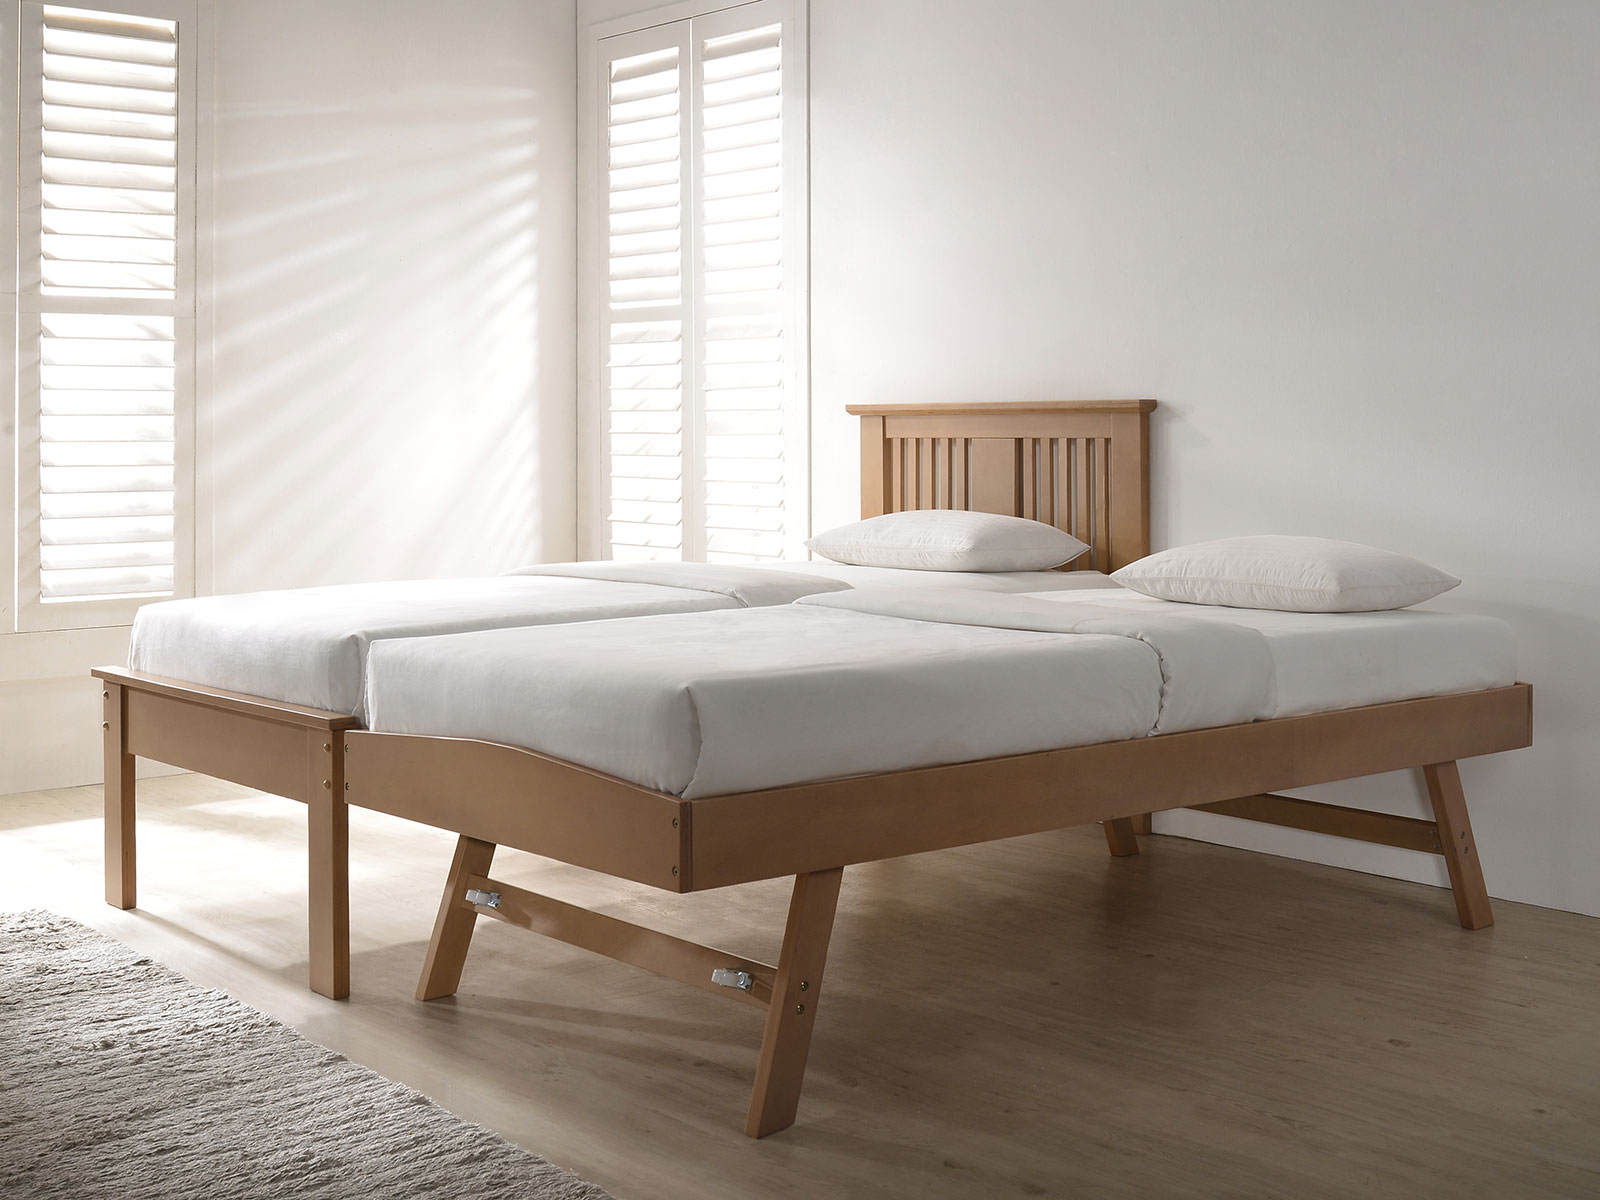 Flintshire Furniture Halkyn Wooden Guest Bed